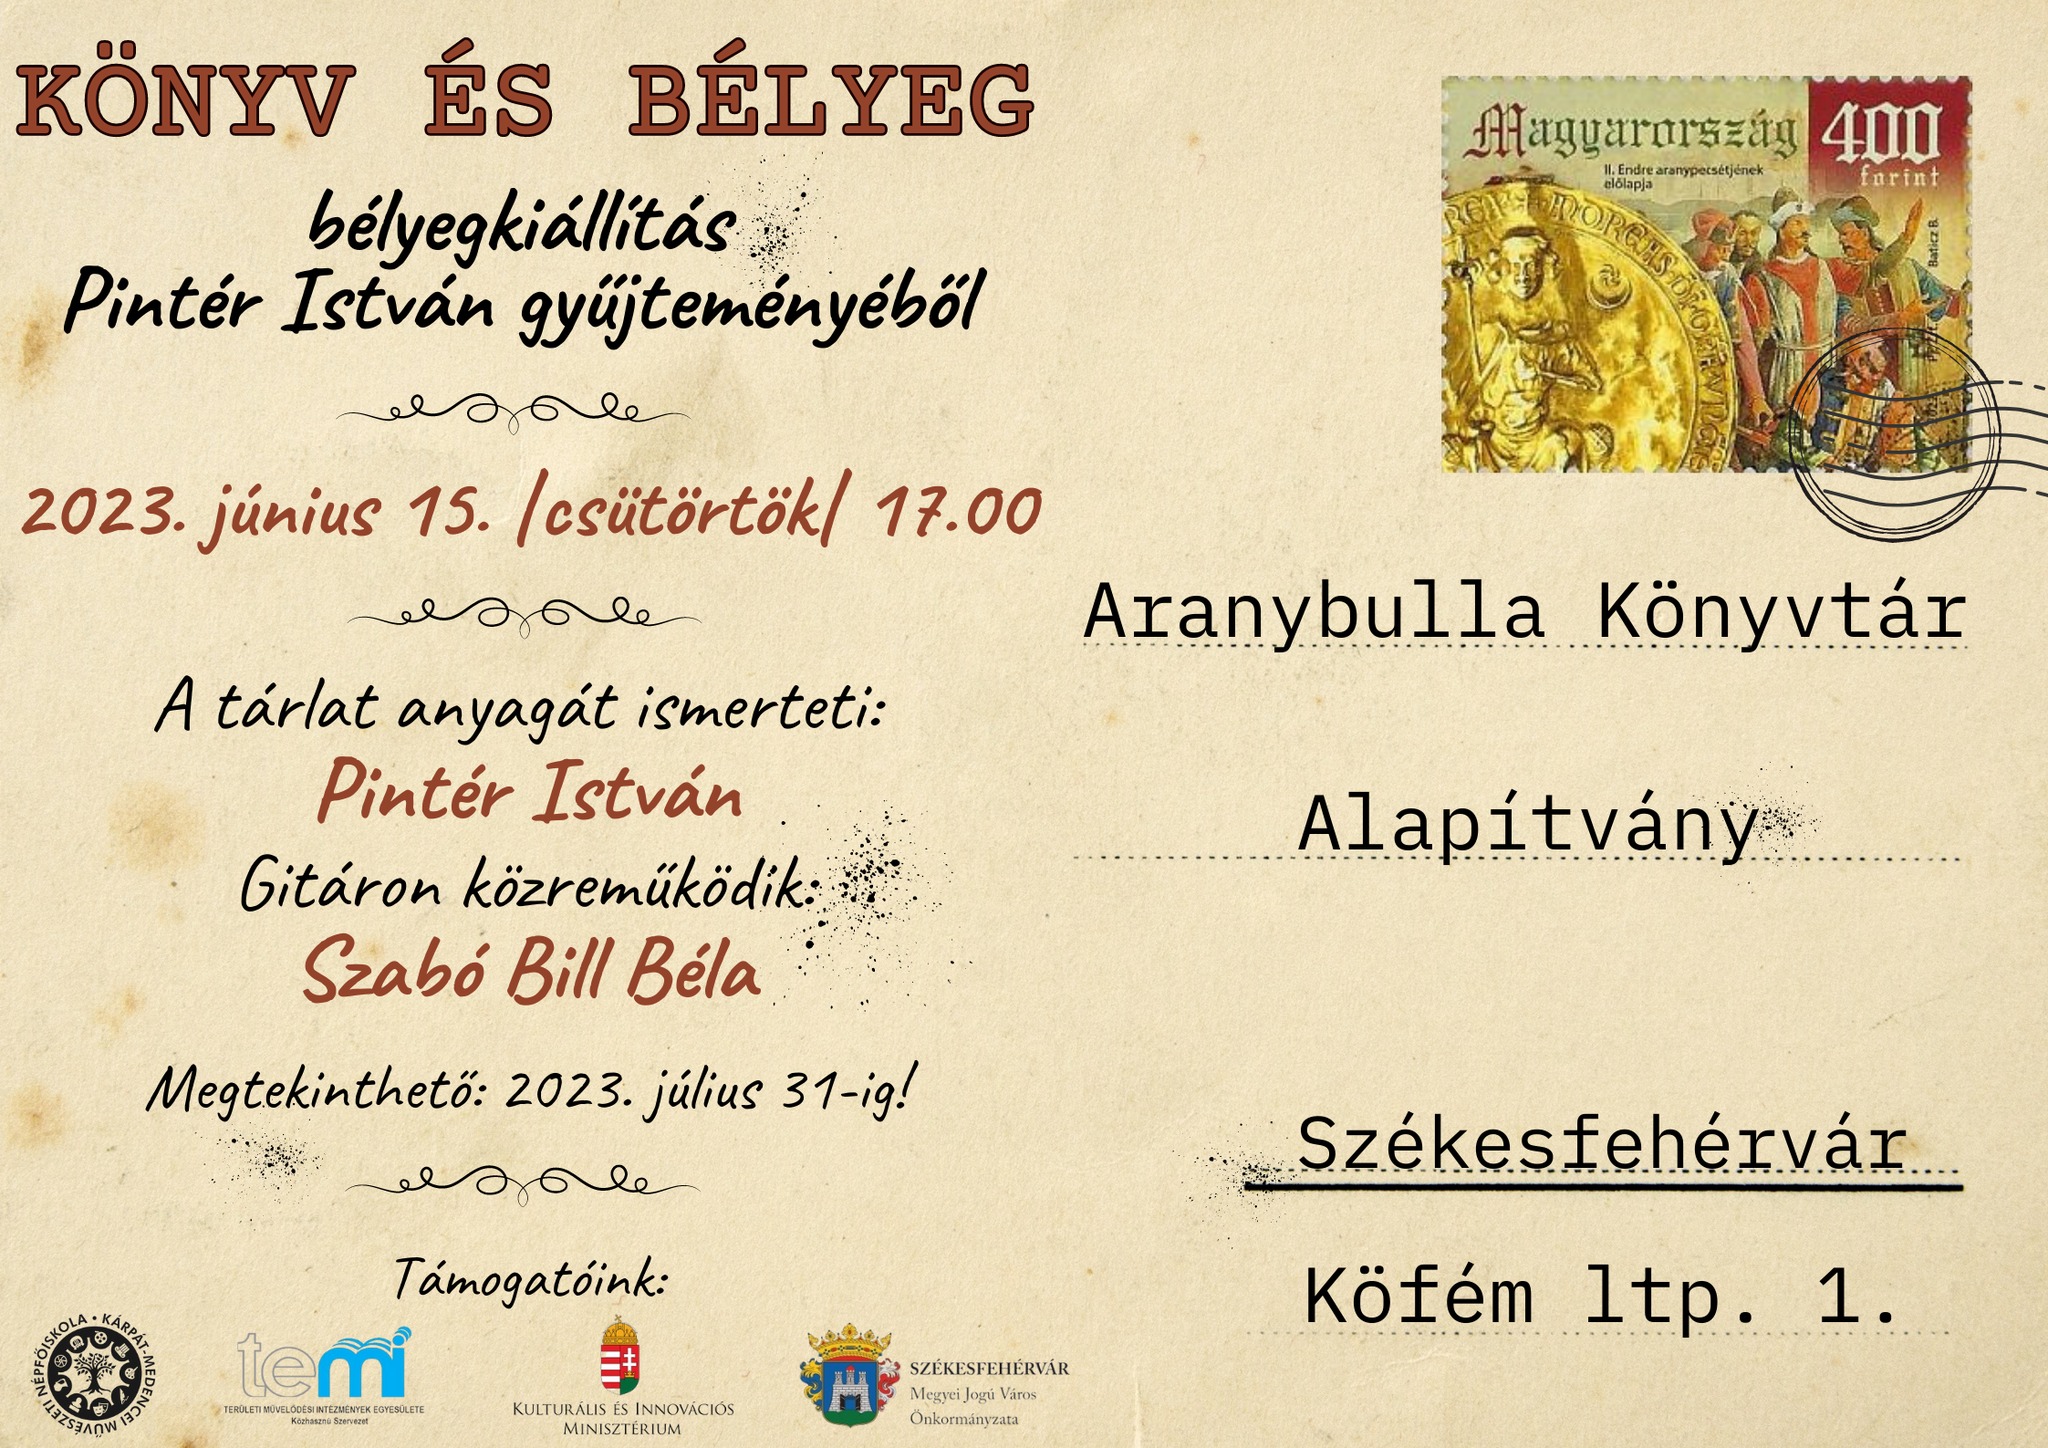 Könyv és bélyeg címmel nyílik kiállítás június 15-én az Aranybulla Könyvtárban